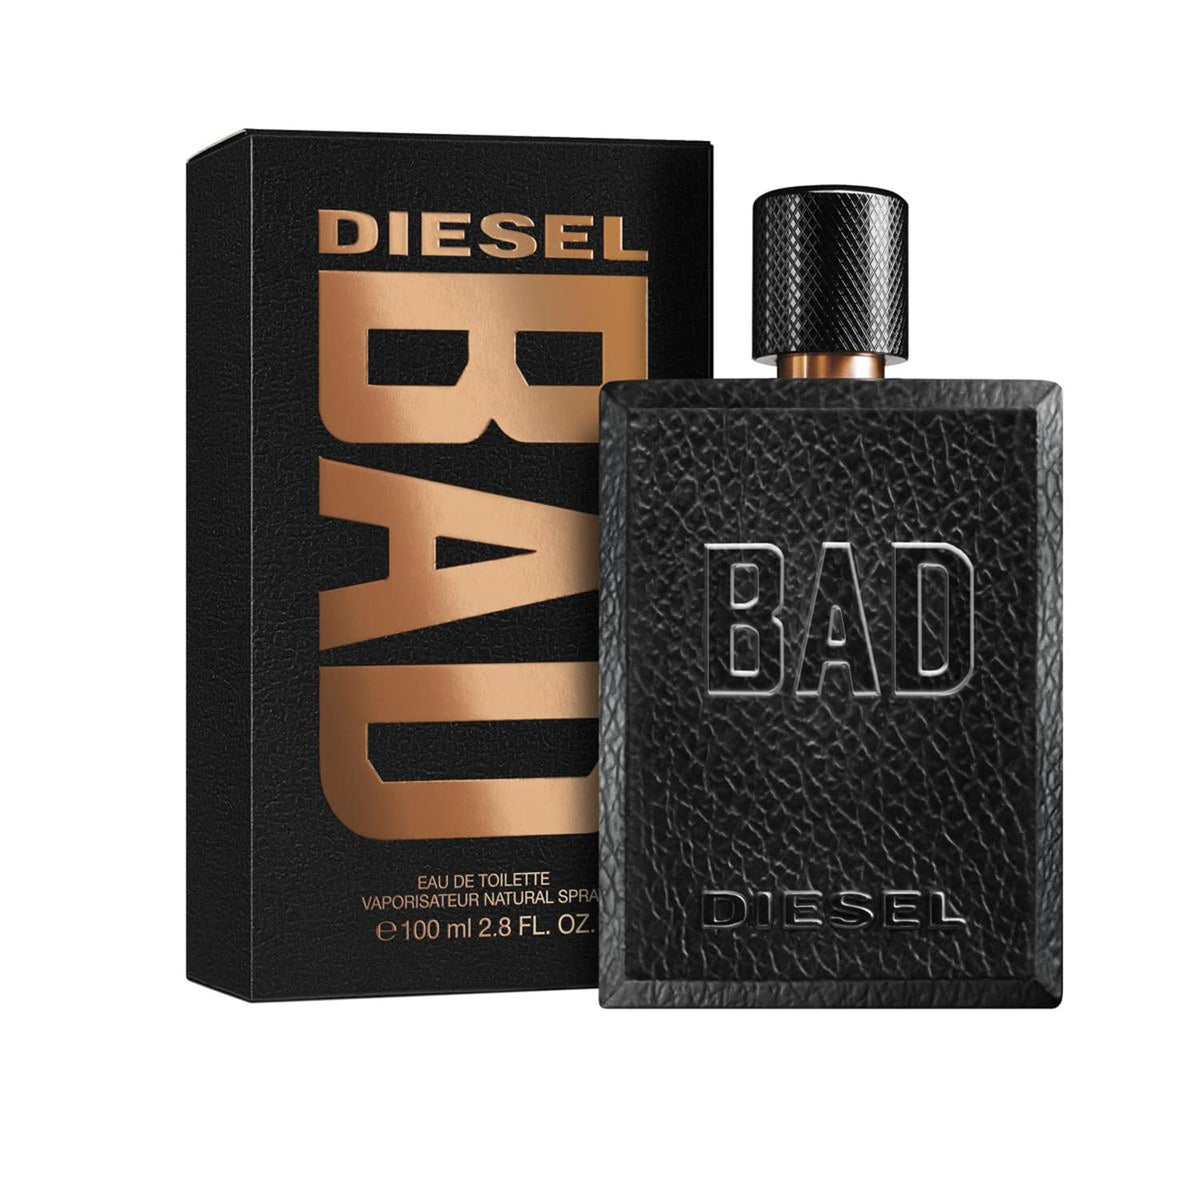 Diesel Bad for Man - Eau De Toilette - 100ml